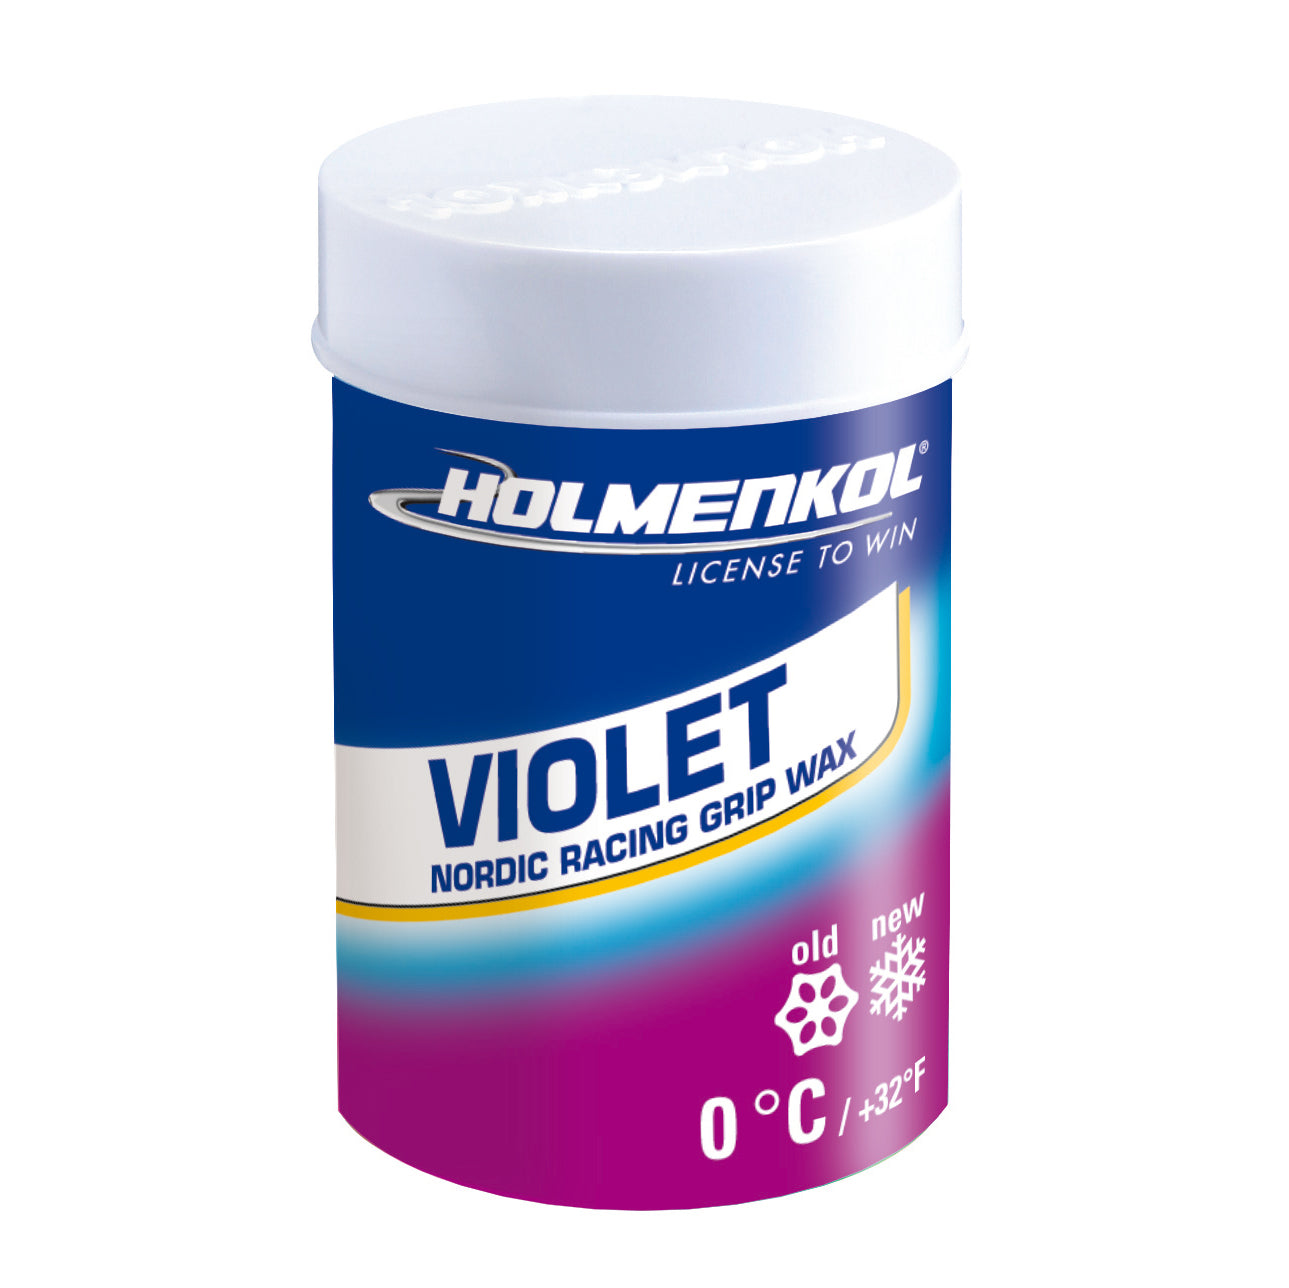 Buy violet-0-c Holmenkol Grip Wax